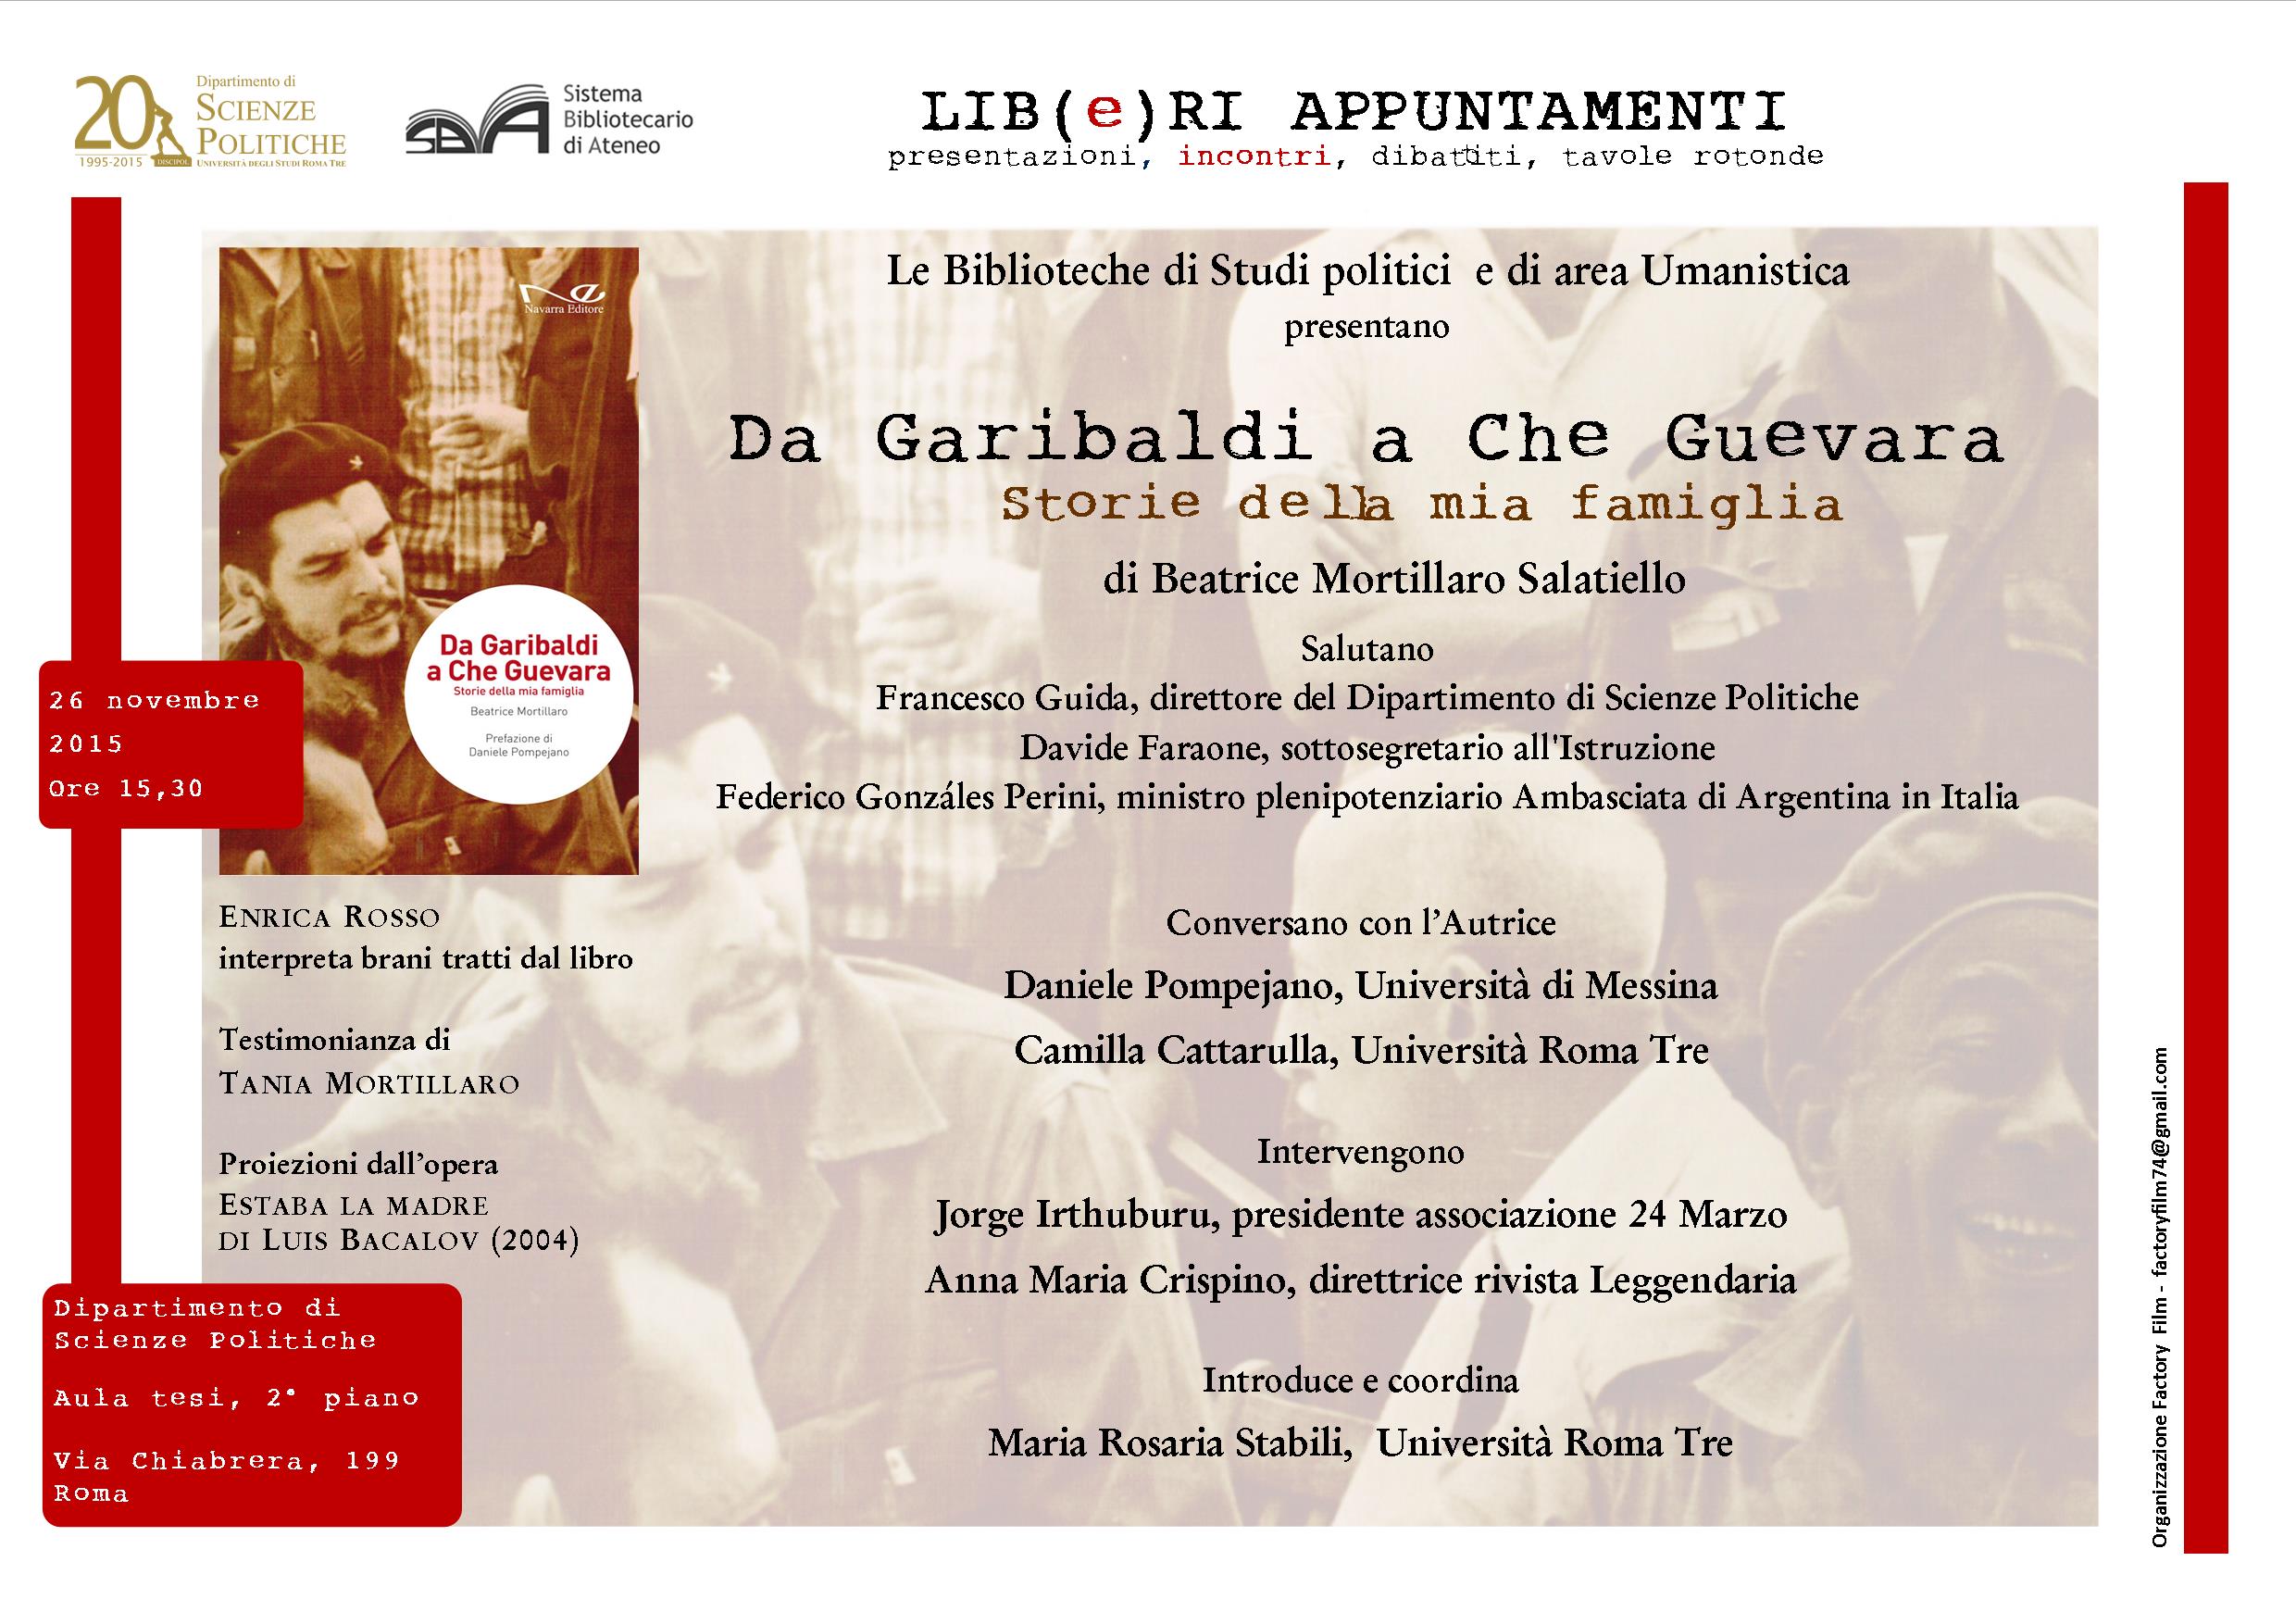 Presentazione del libro di Beatrice Mortillaro Salatiello, “Da Garibaldi a Che Guevara. Storie della mia famiglia”